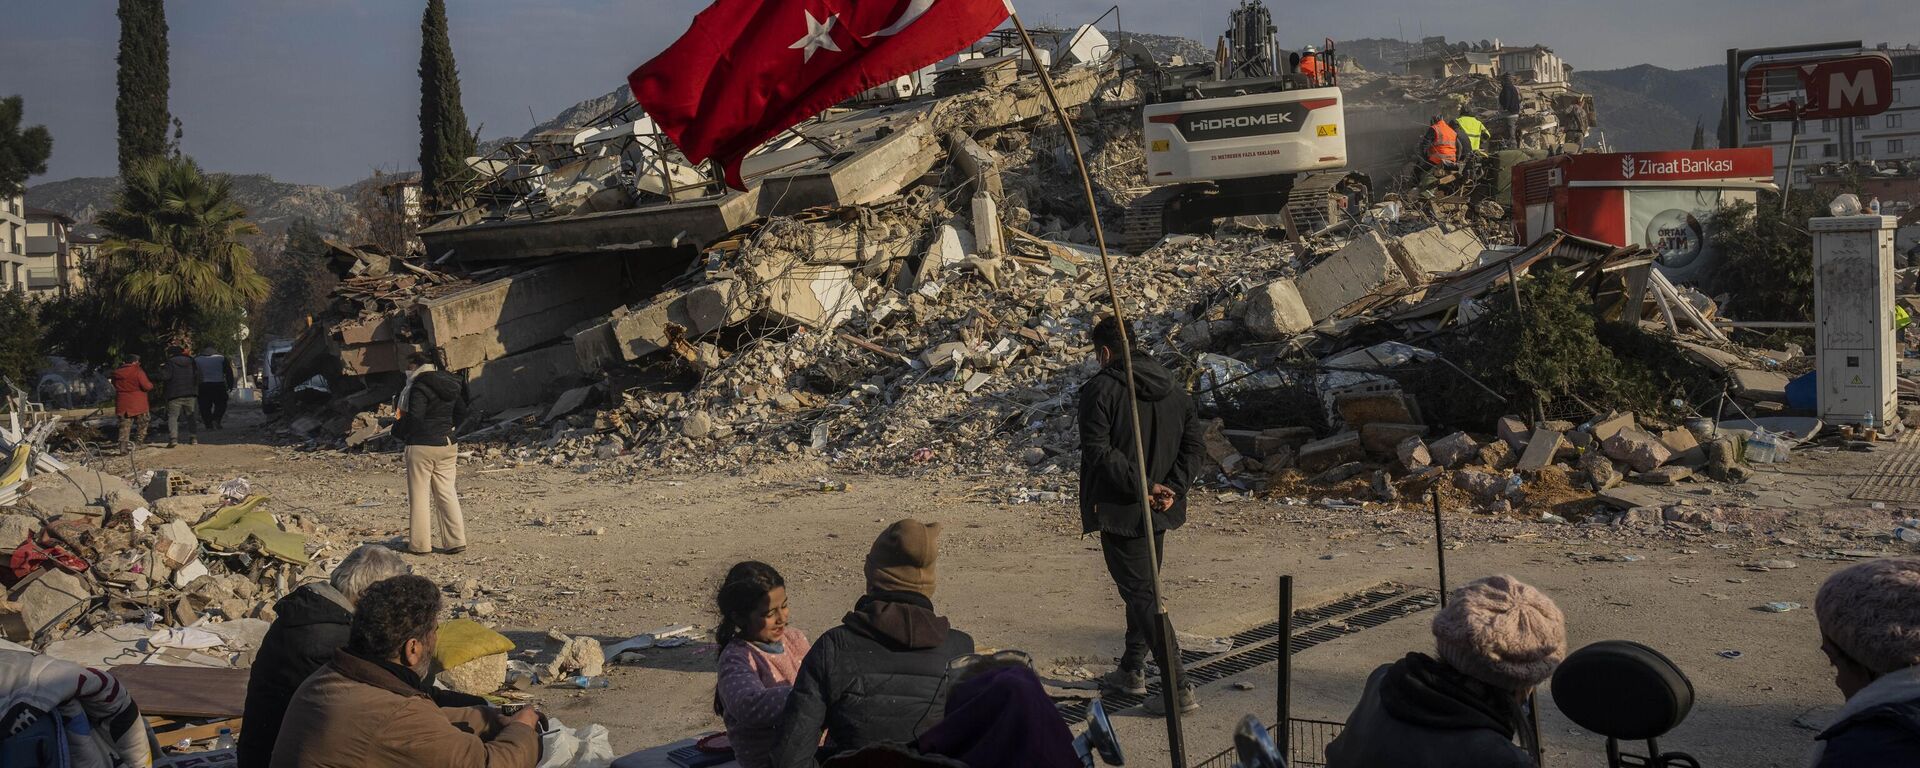 Família sentada junto de prédio colapsado após terremoto, em Antália, Turquia, 11 de fevereiro de 2023 - Sputnik Brasil, 1920, 15.02.2023